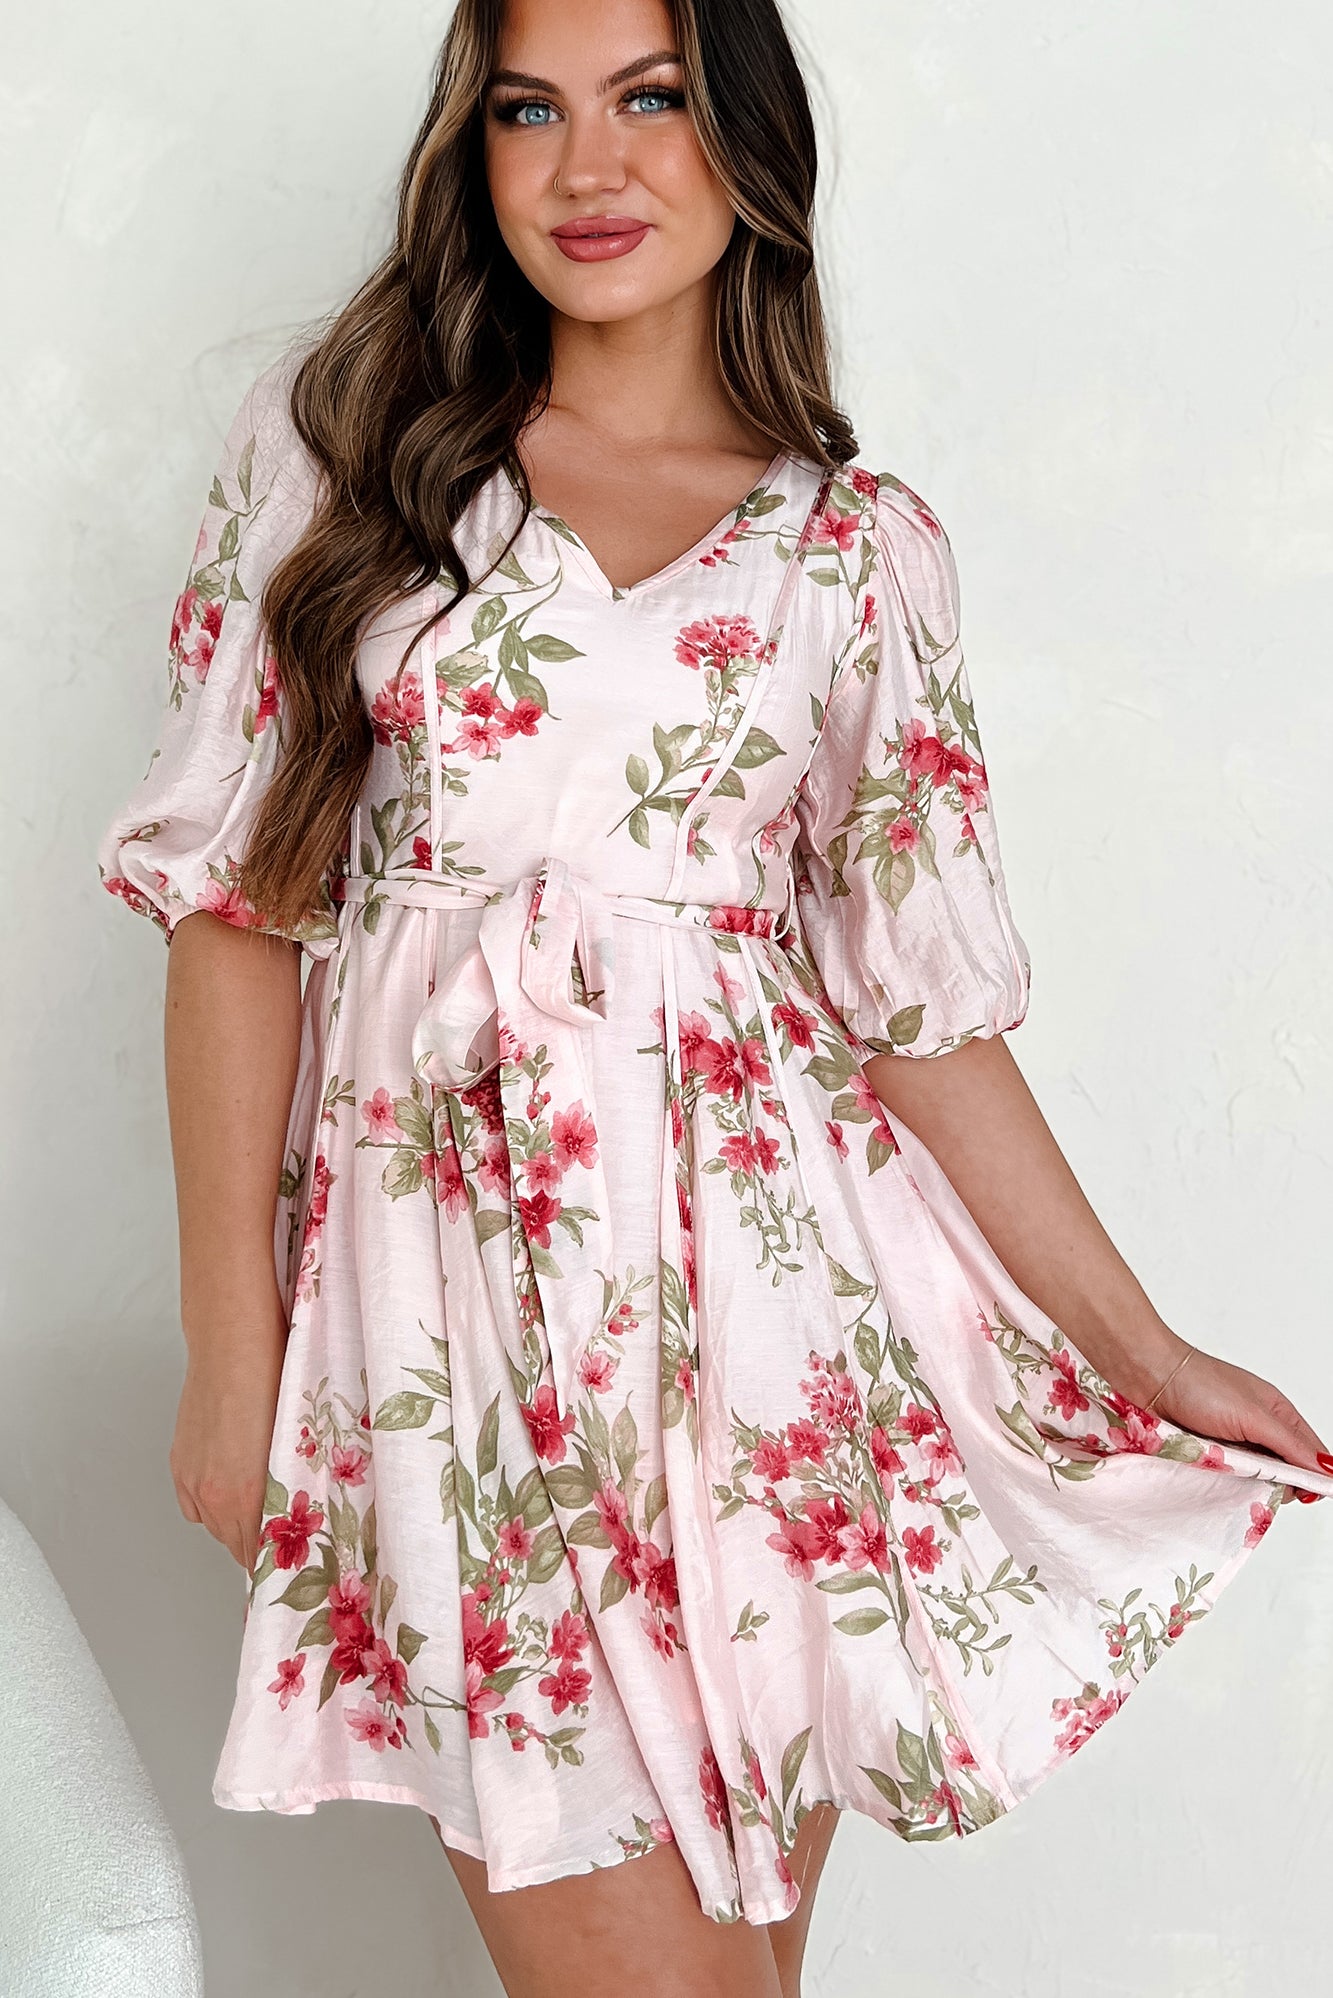 Charming Energy Floral Mini Dress (Blush Multi) - NanaMacs